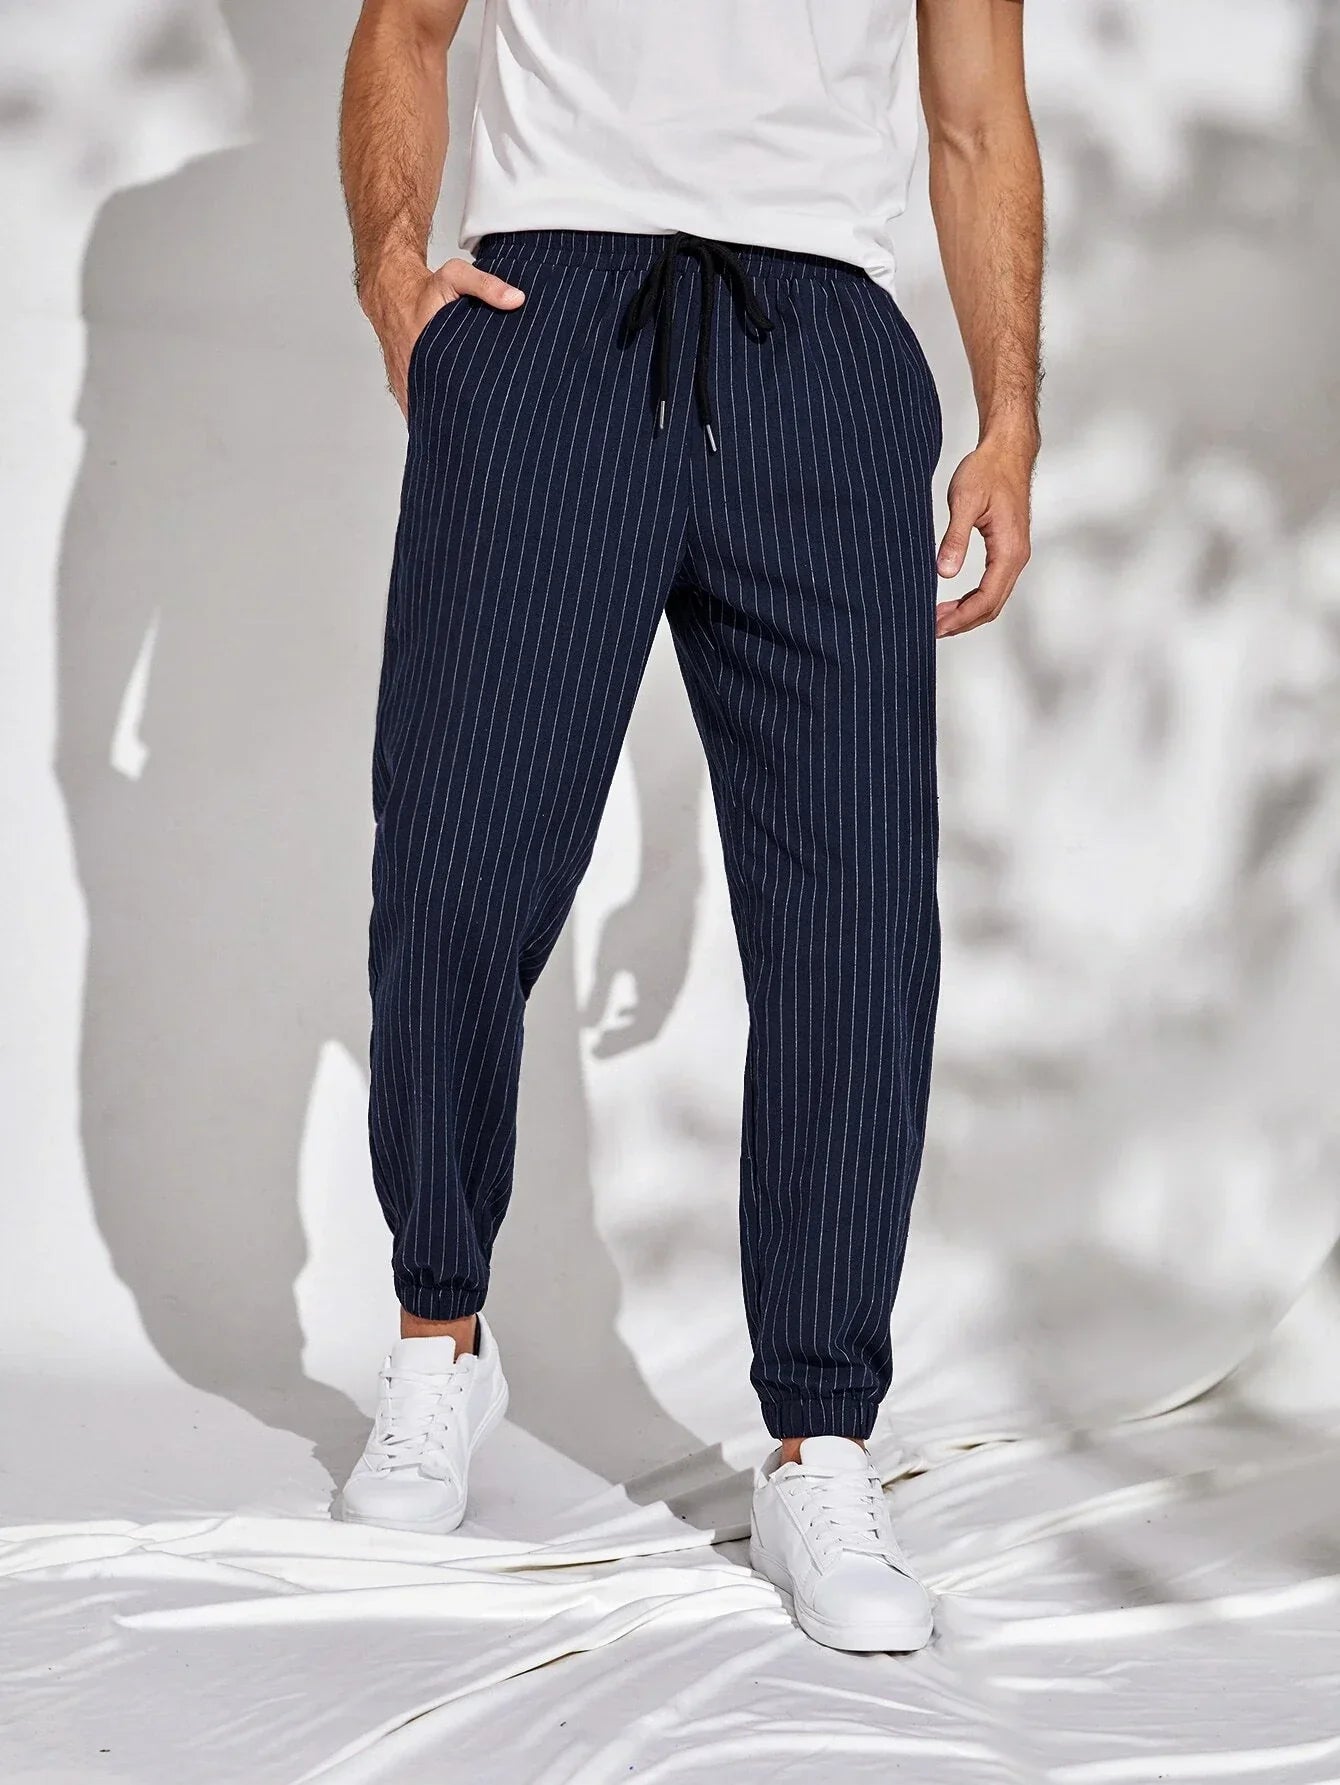 Nobero Men's Jogger, Premium Fabrics, All-Day Comfy